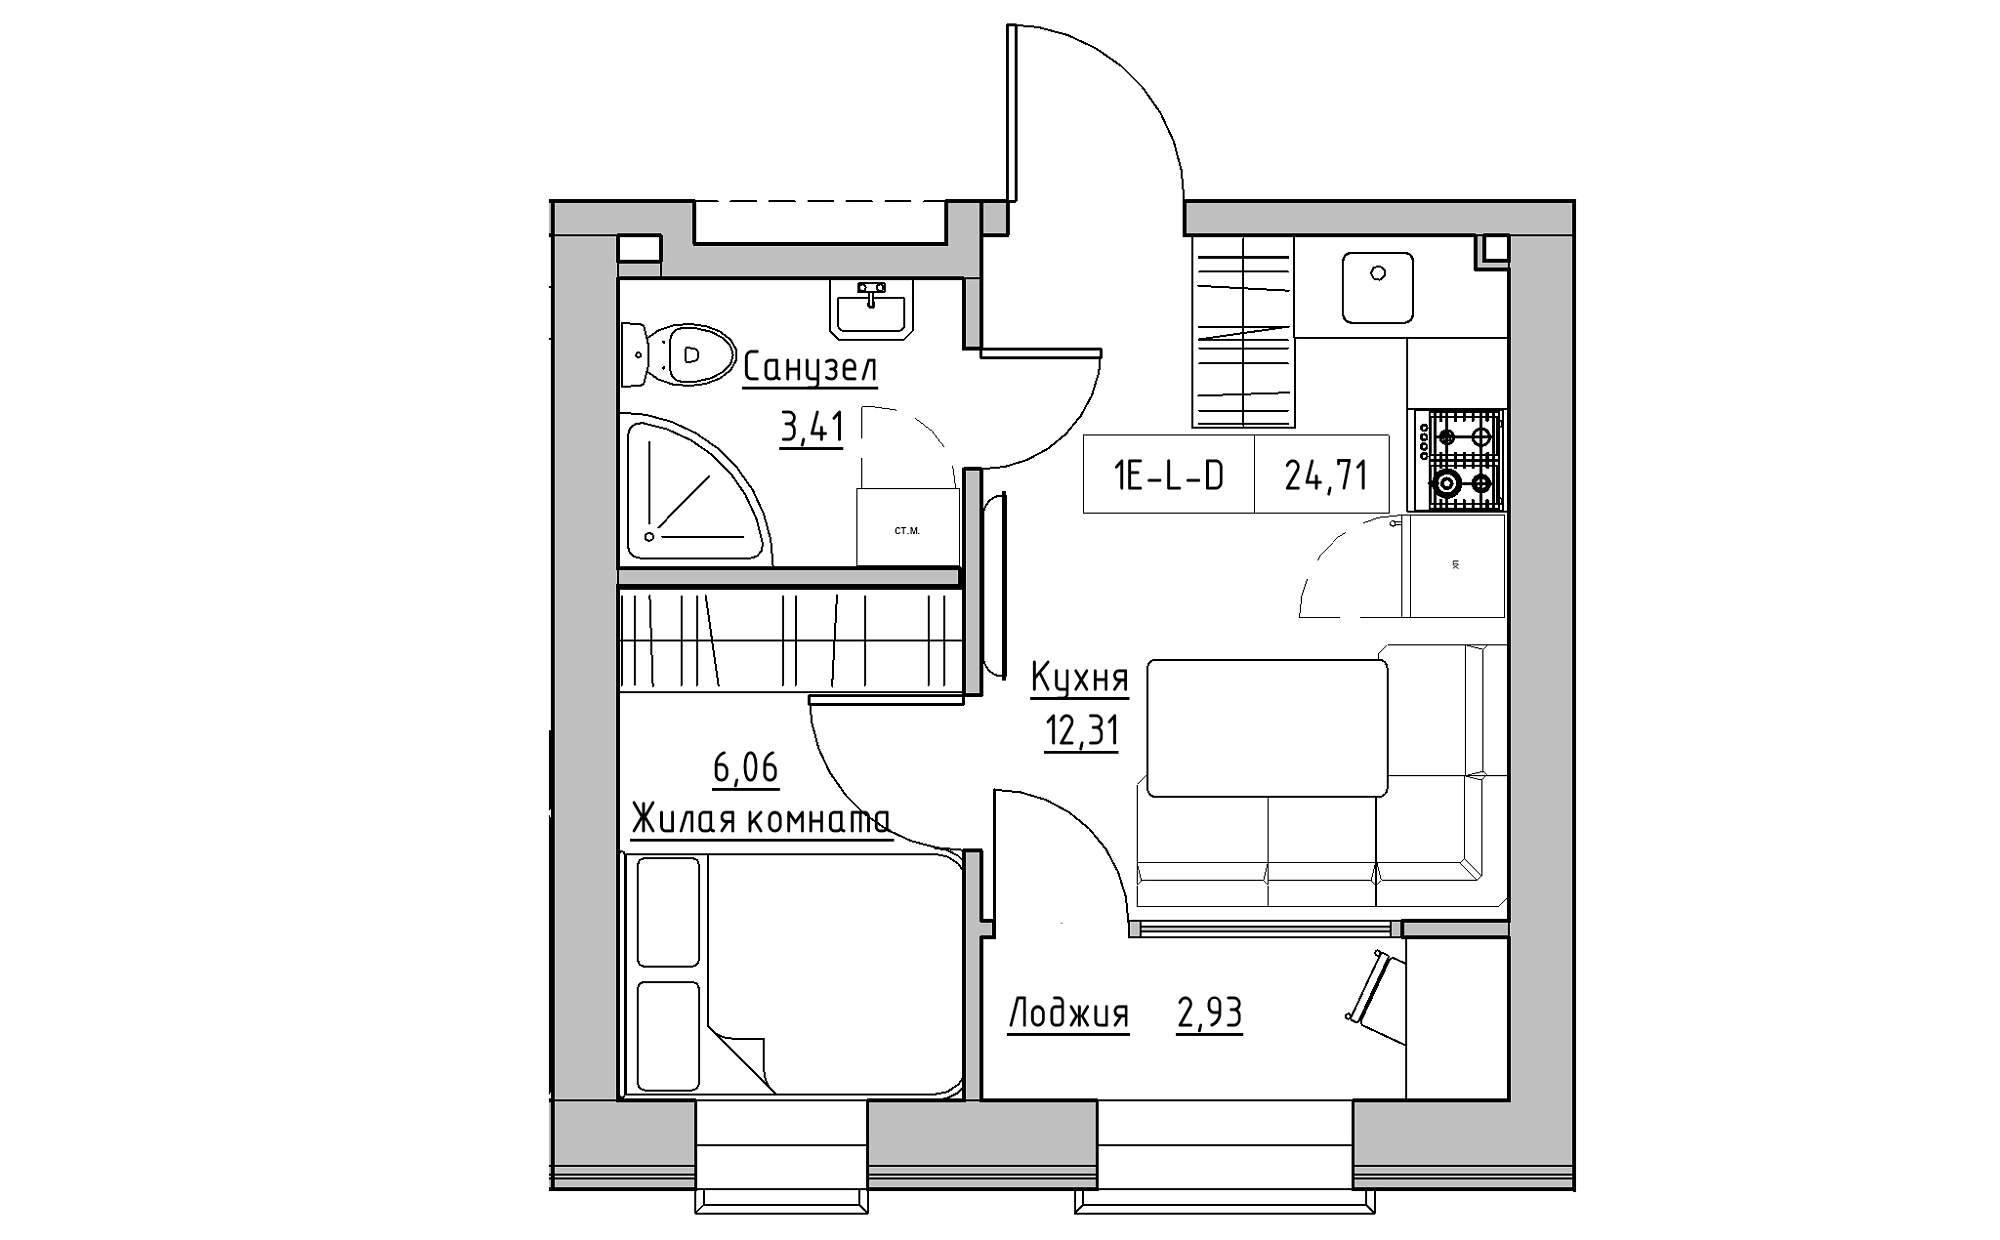 Планування 1-к квартира площею 24.71м2, KS-022-05/0002.